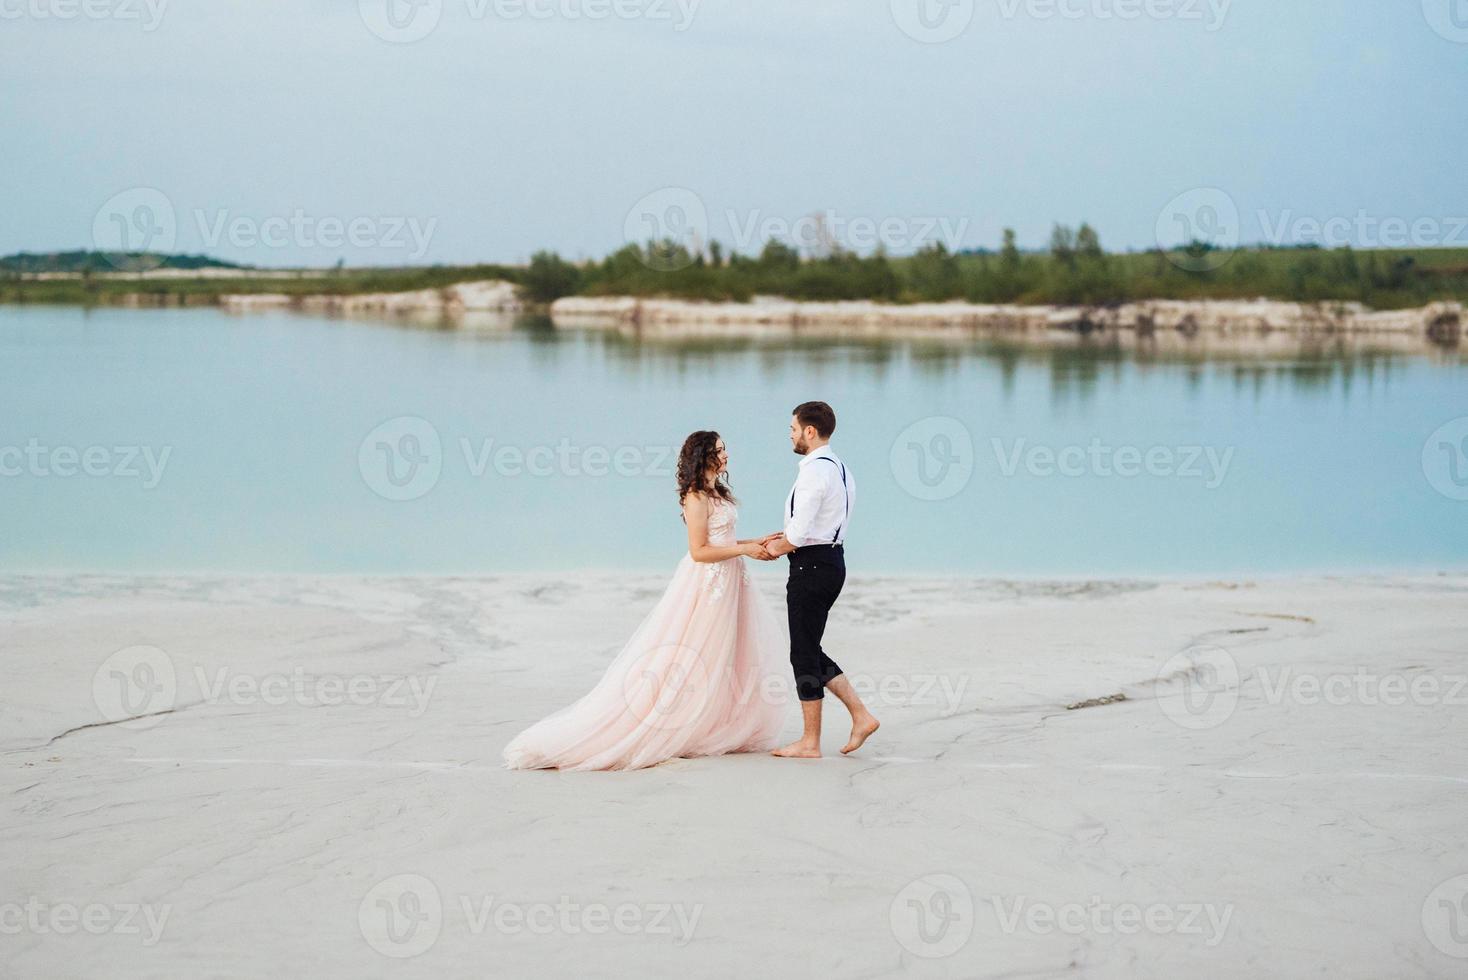 Pareja joven un chico con pantalones negros y una chica con un vestido rosa están caminando por la arena blanca foto